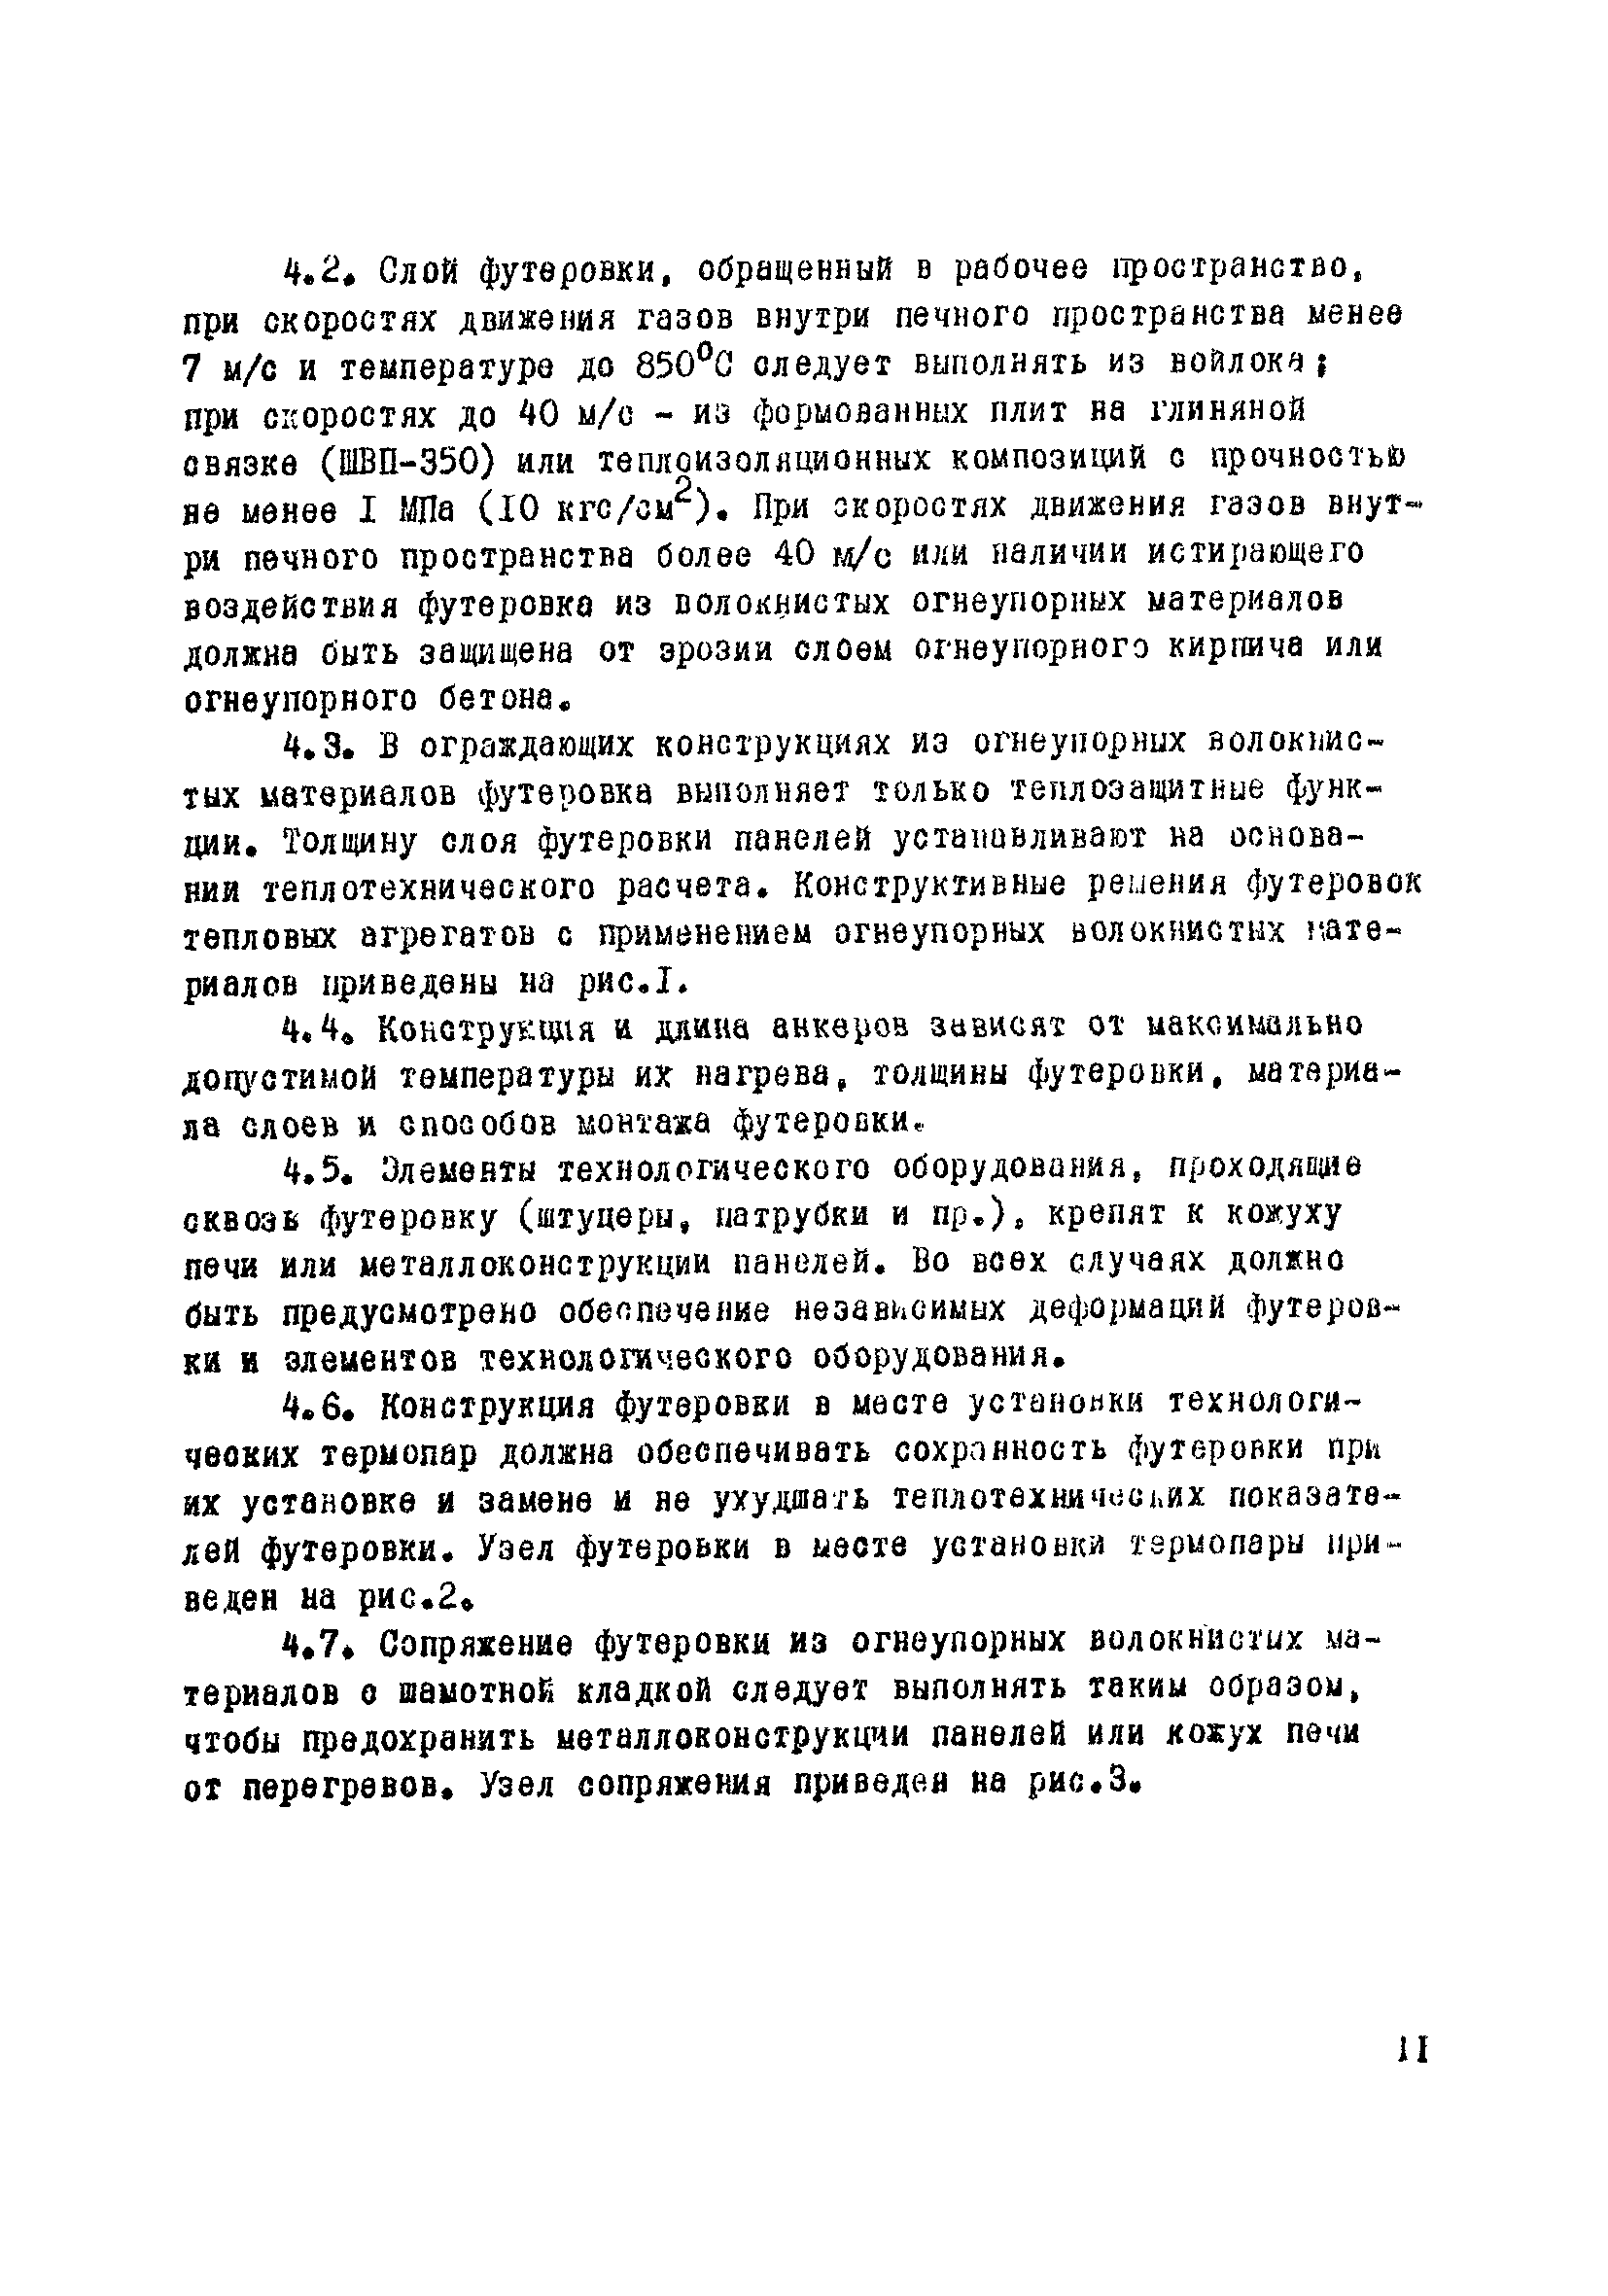 ВСН 429-81/ММСС СССР